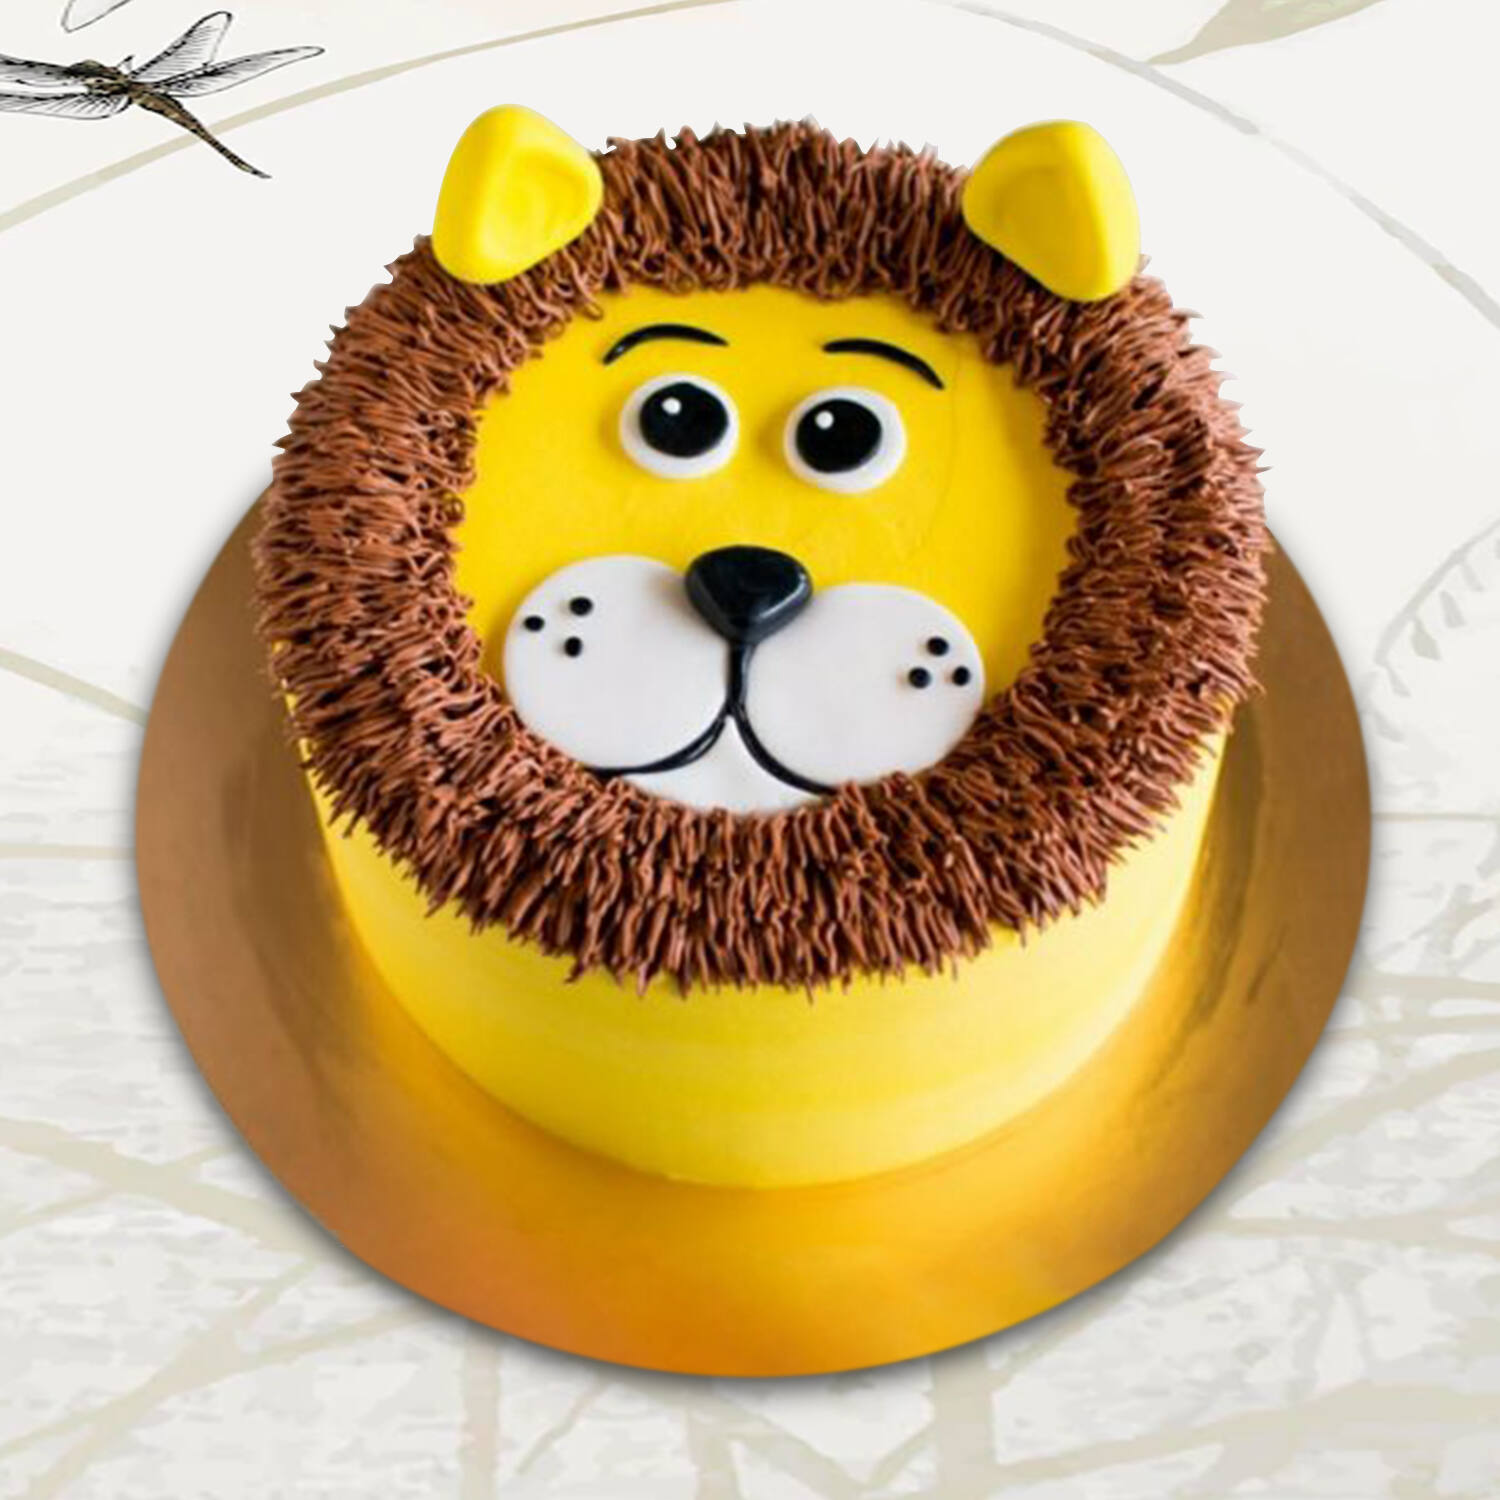 Lion Theme Cake! Easy Cake Decorating - YouTube